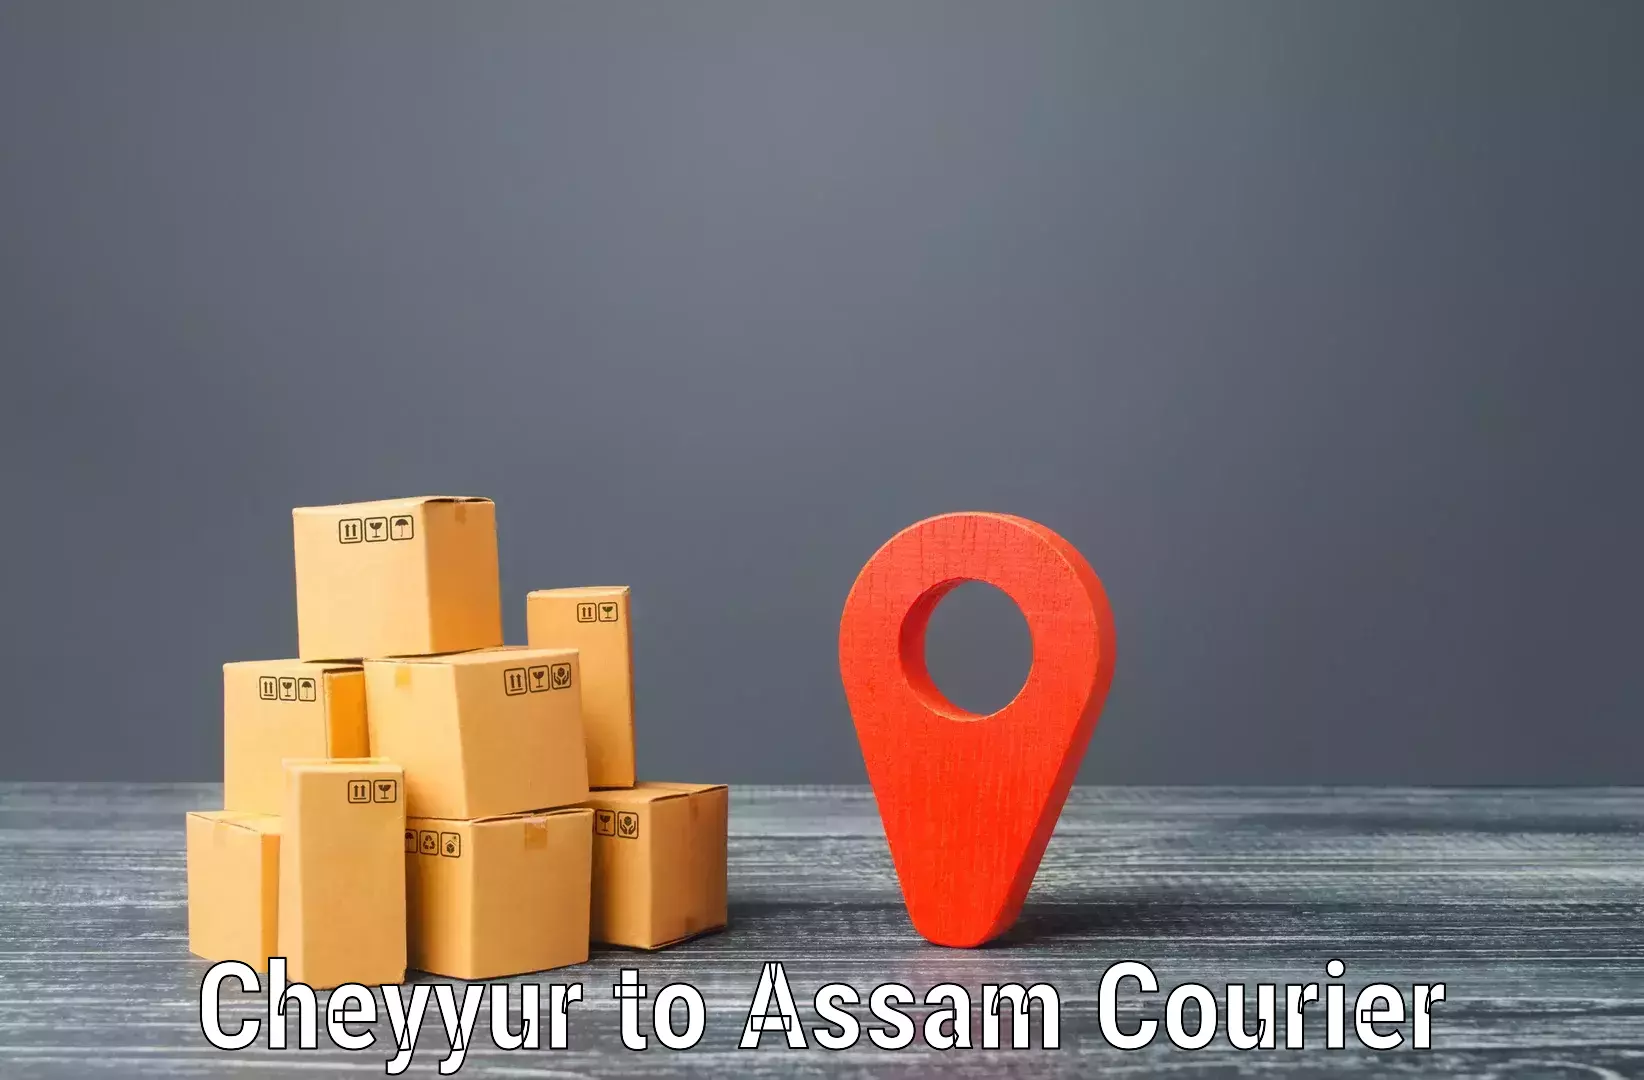 24-hour courier service Cheyyur to Darranga Mela